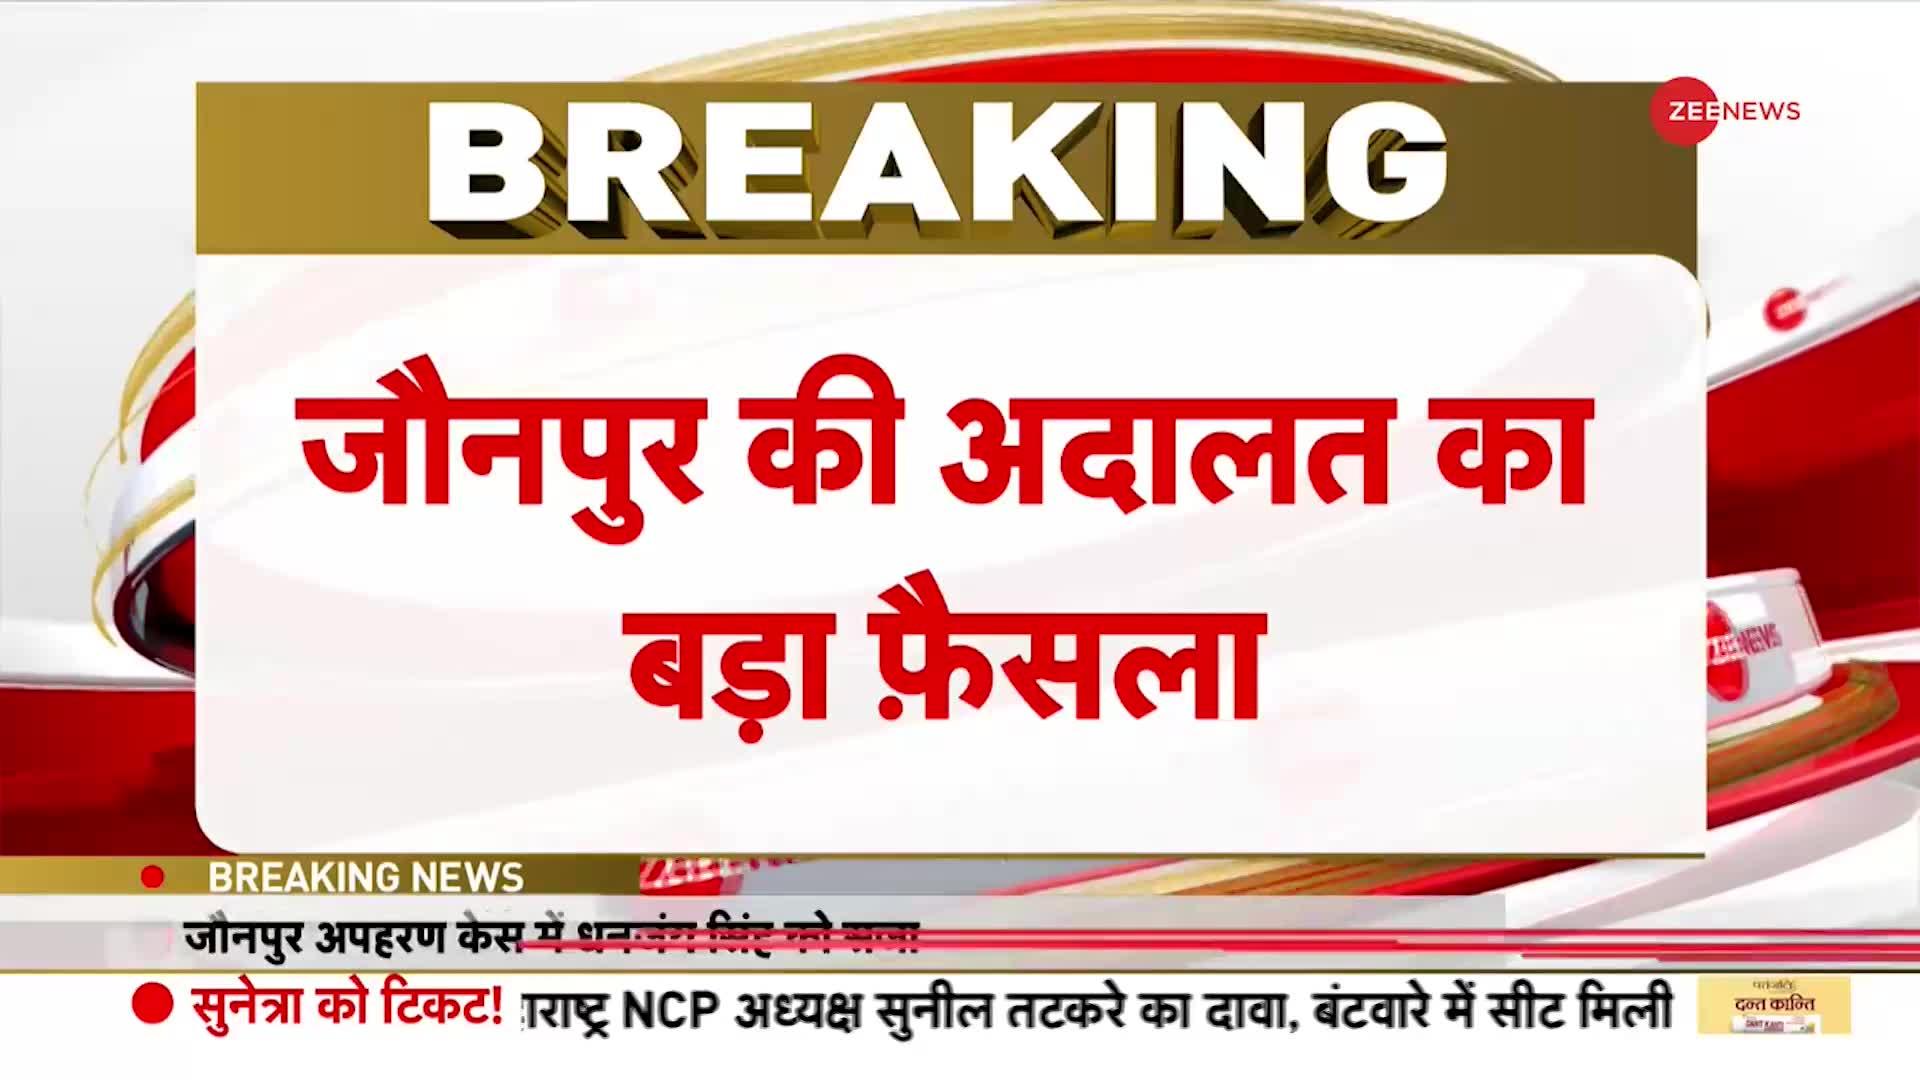 Breaking News: अपहरण केस में पूर्व सांसद धनंजय सिंह को 7 साल की सजा